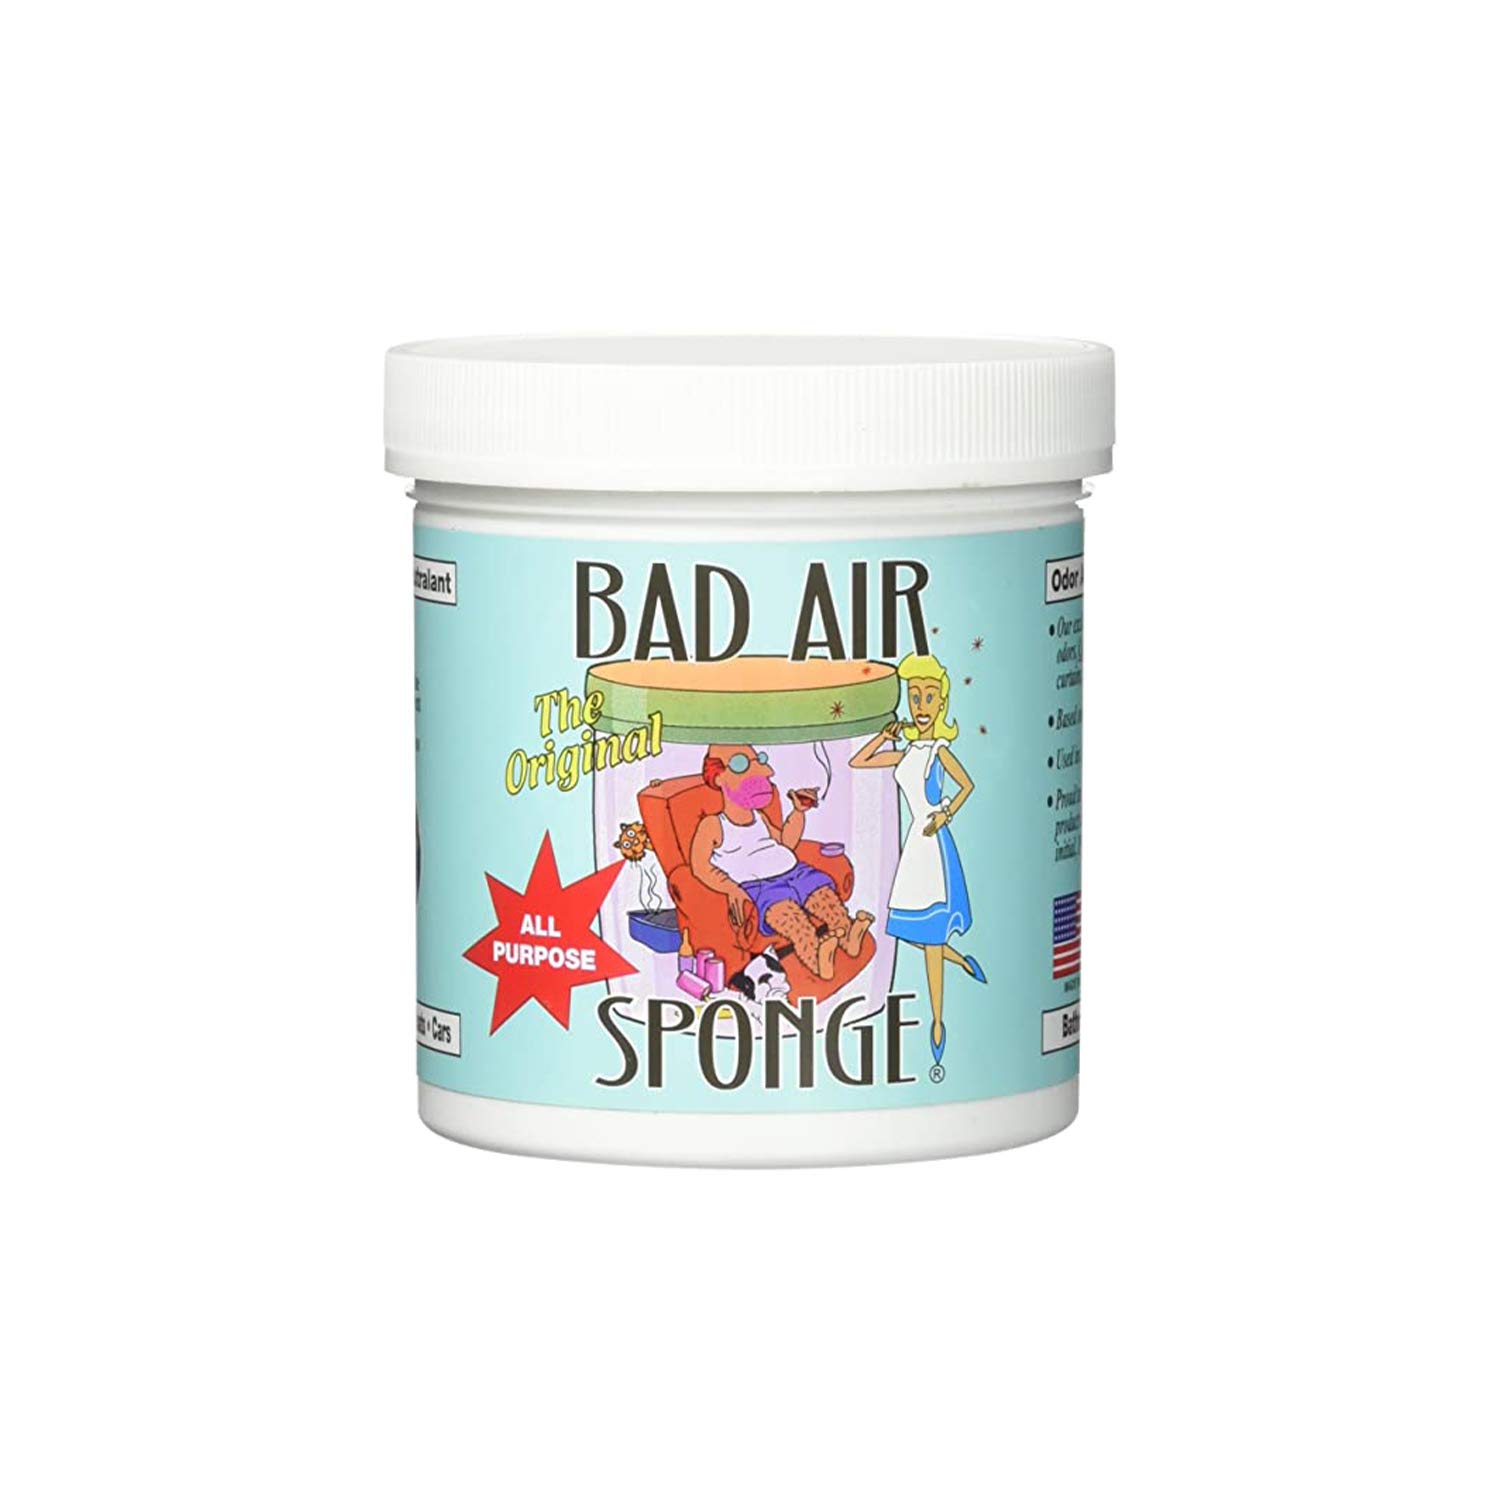 Bad Air Sponge 